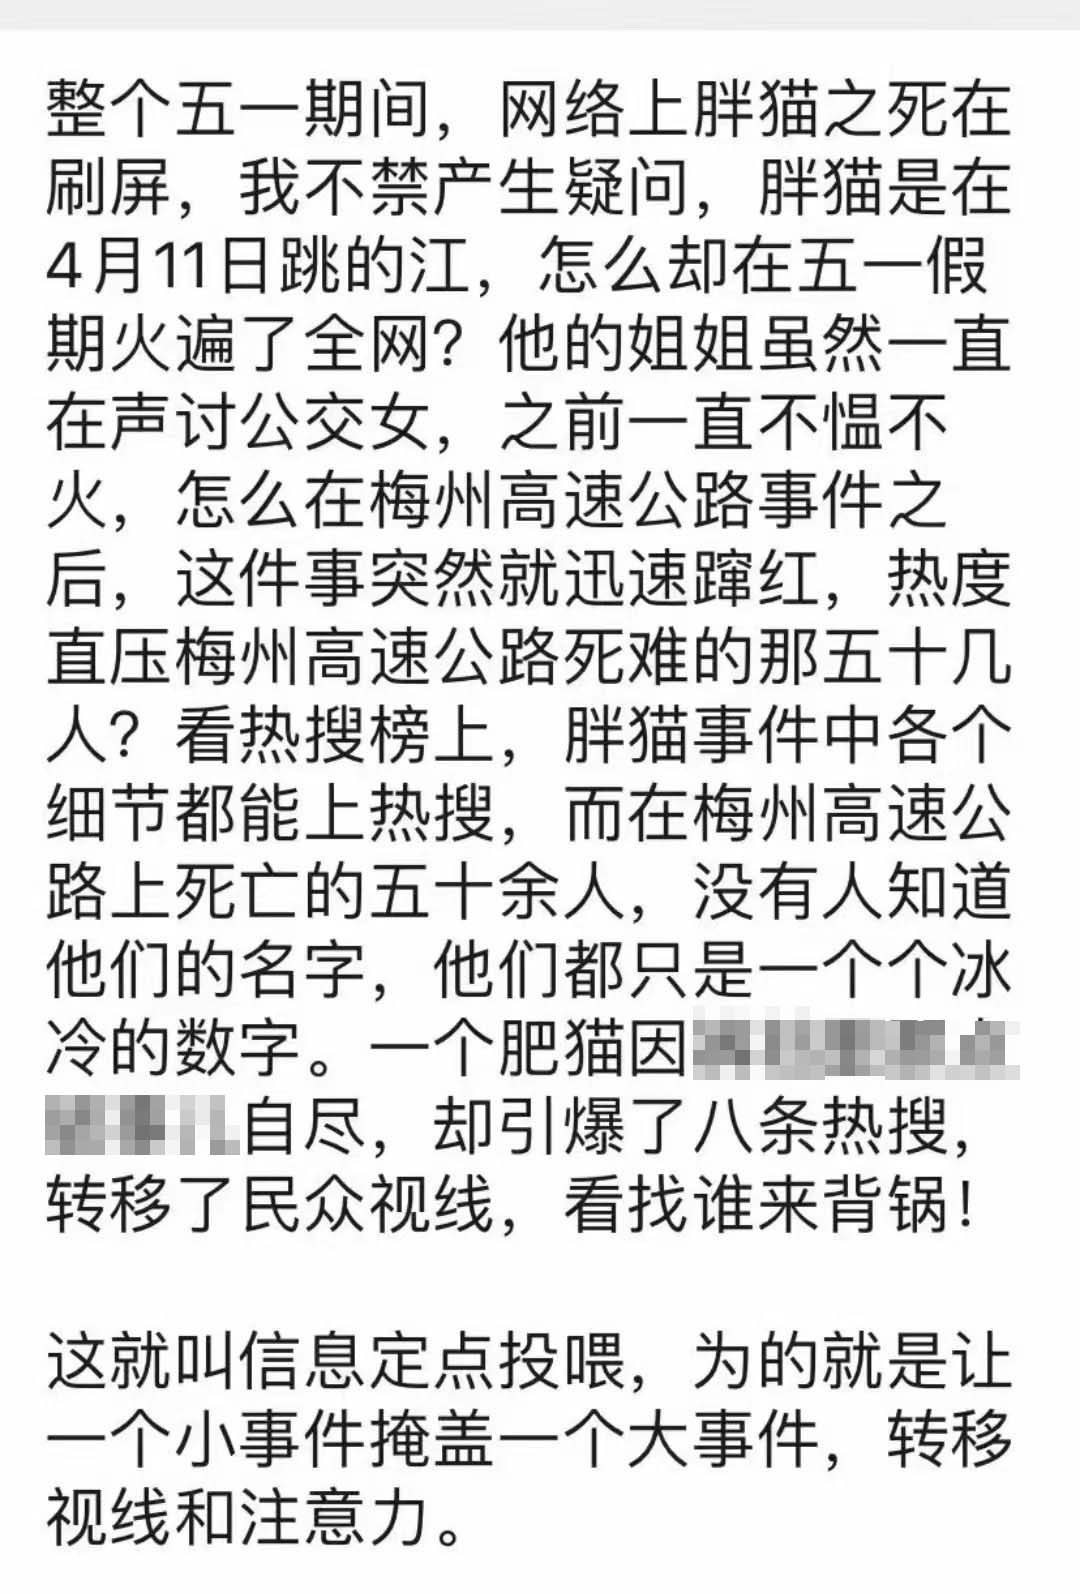 习近平对广东梅州市梅大高速茶阳路段塌方灾害作出重要指示_北京时间